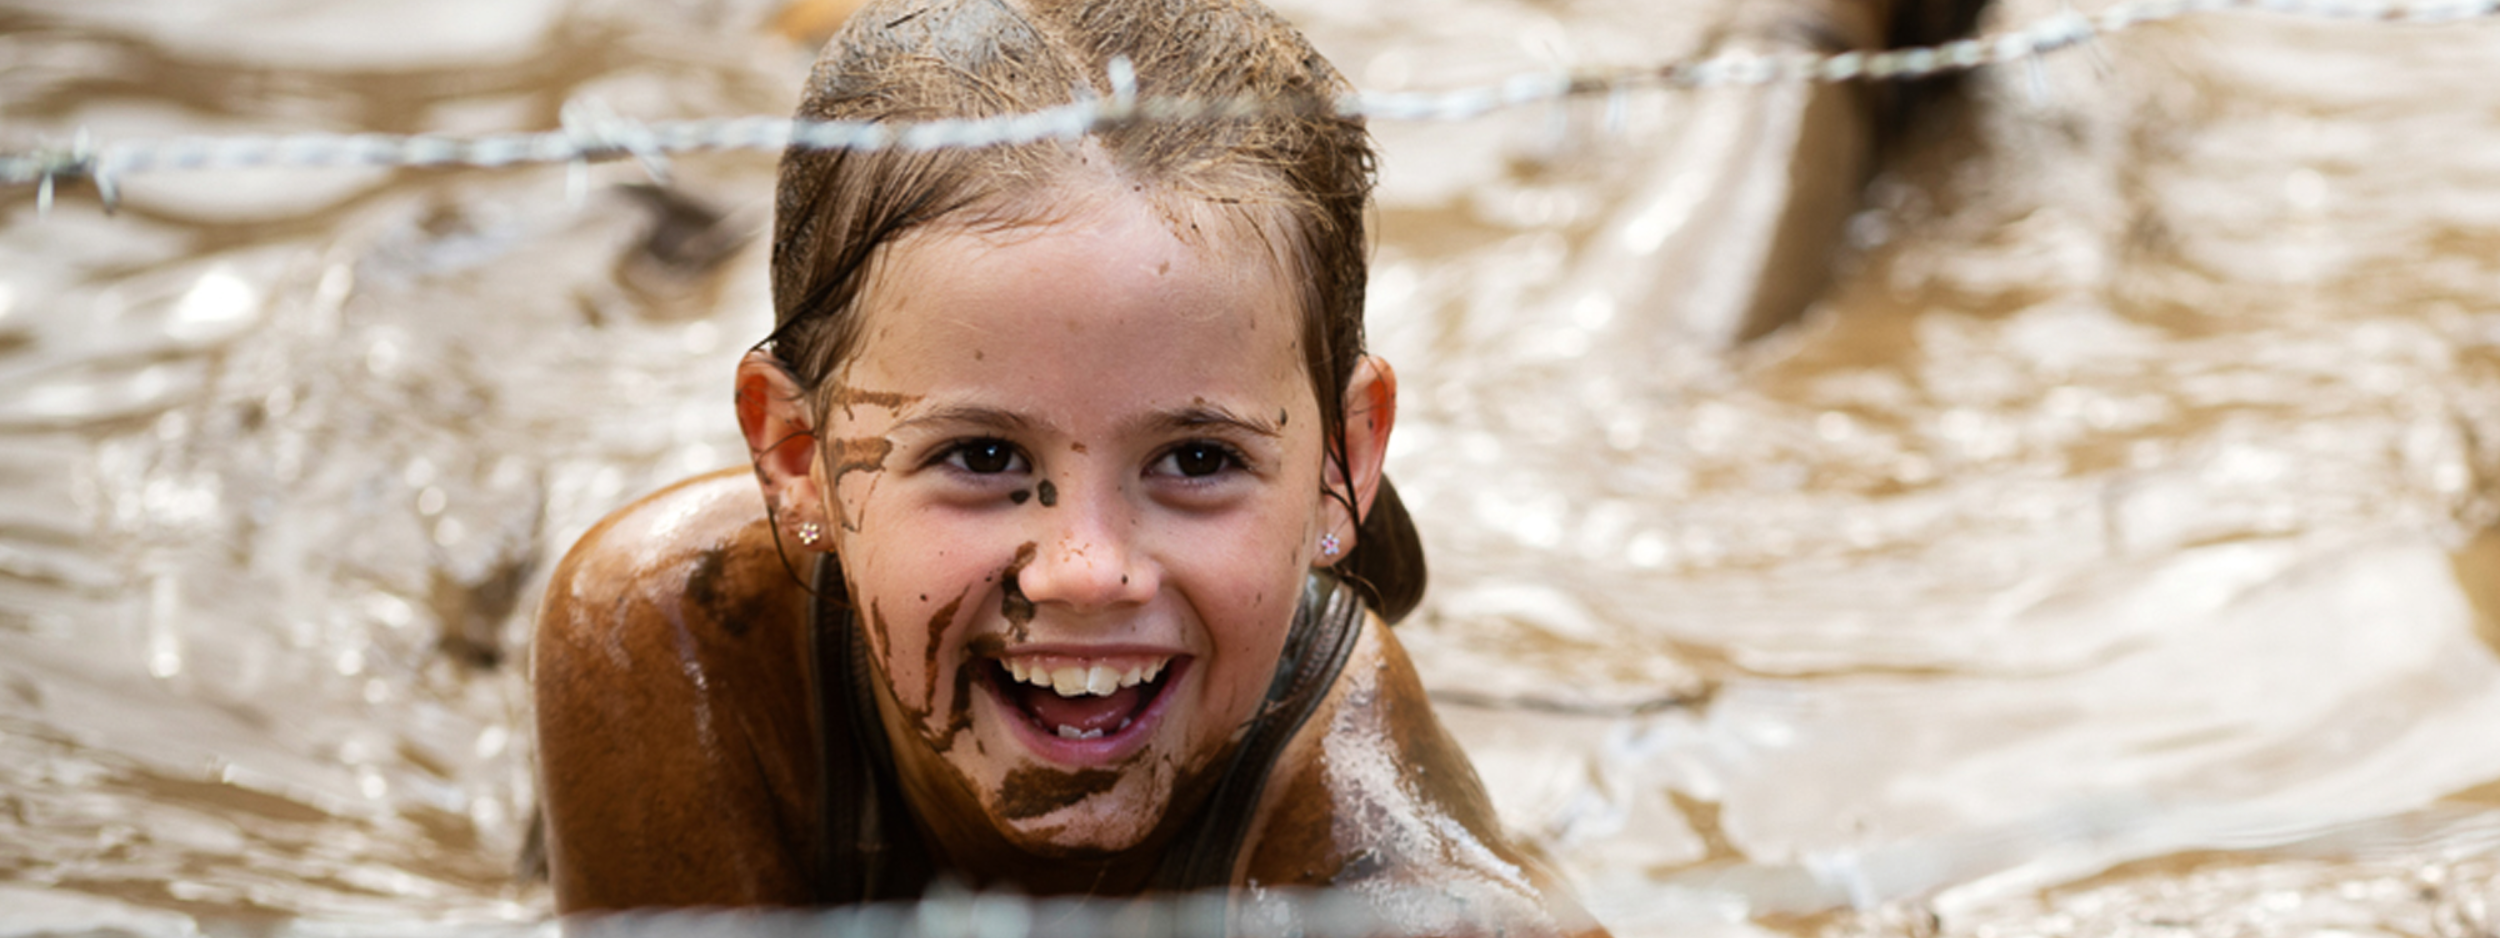 een meisje dat lachend door de modder kruipt tijdens de family editie van strong viking amsterdam